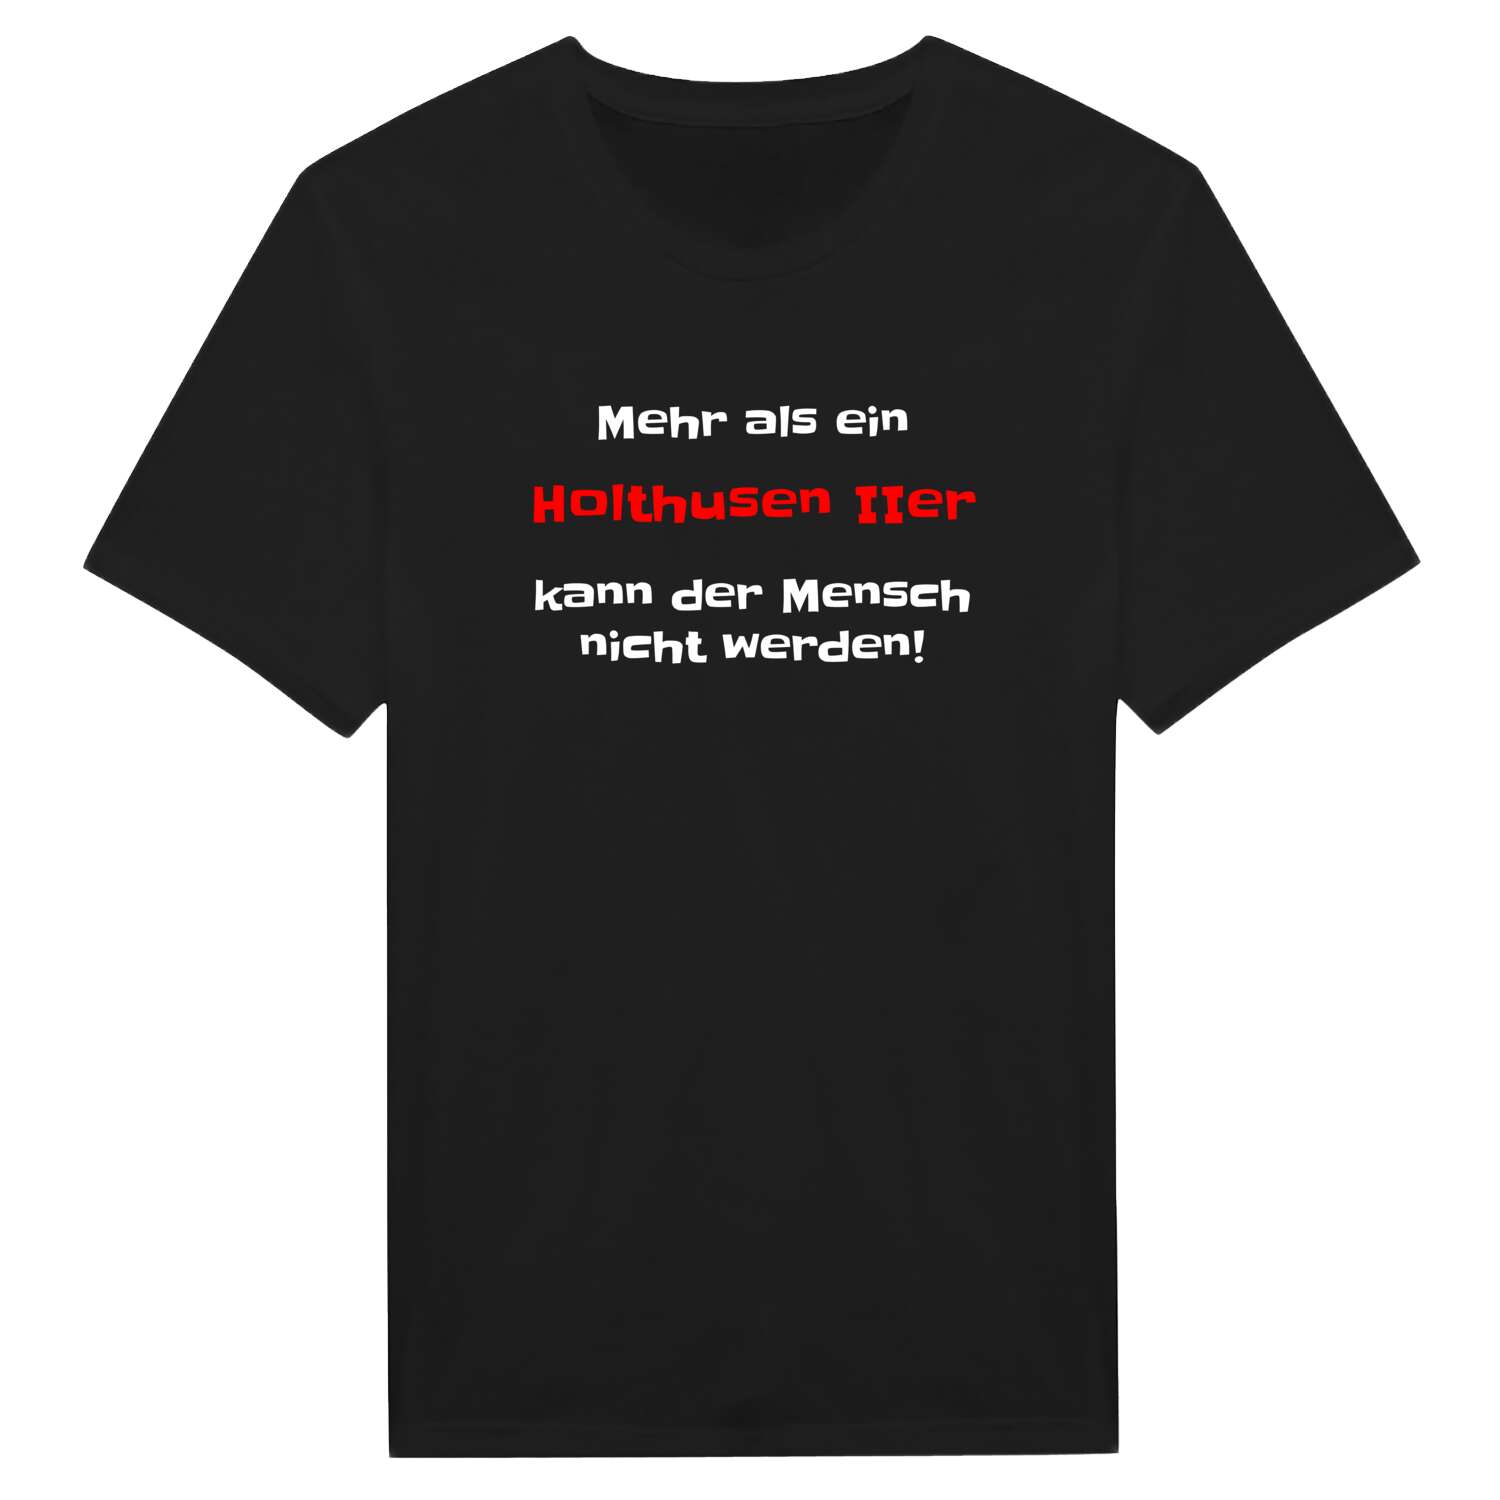 Holthusen II T-Shirt »Mehr als ein«